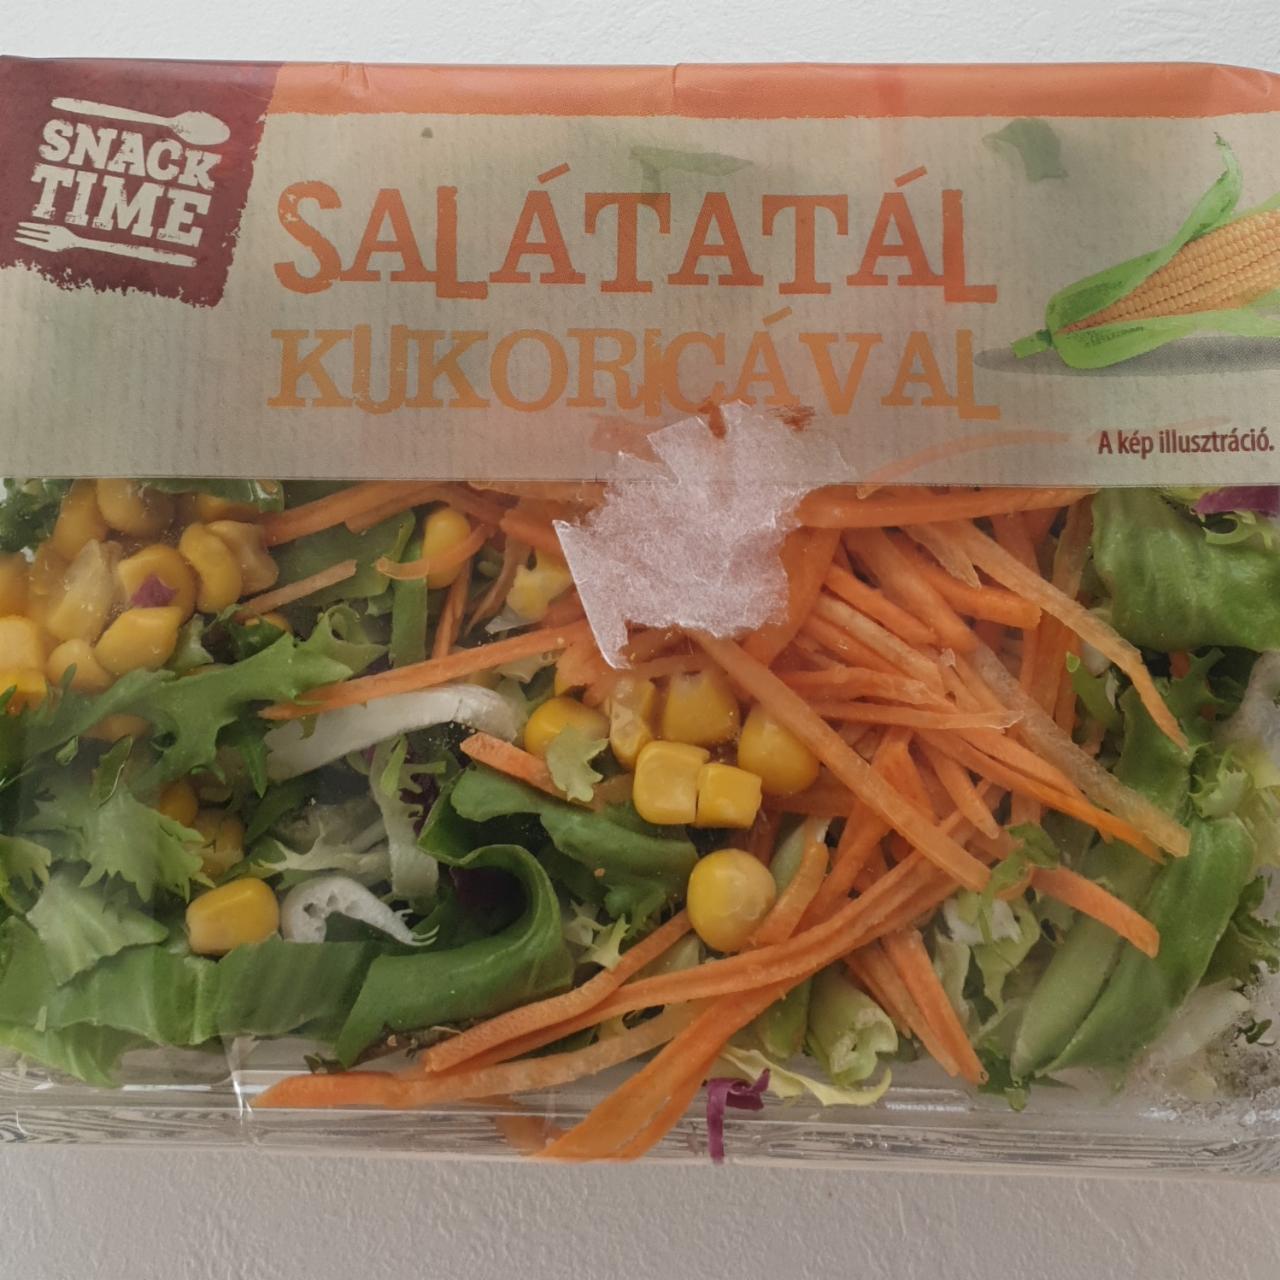 Képek - Salátatál kukoricával Snack Time